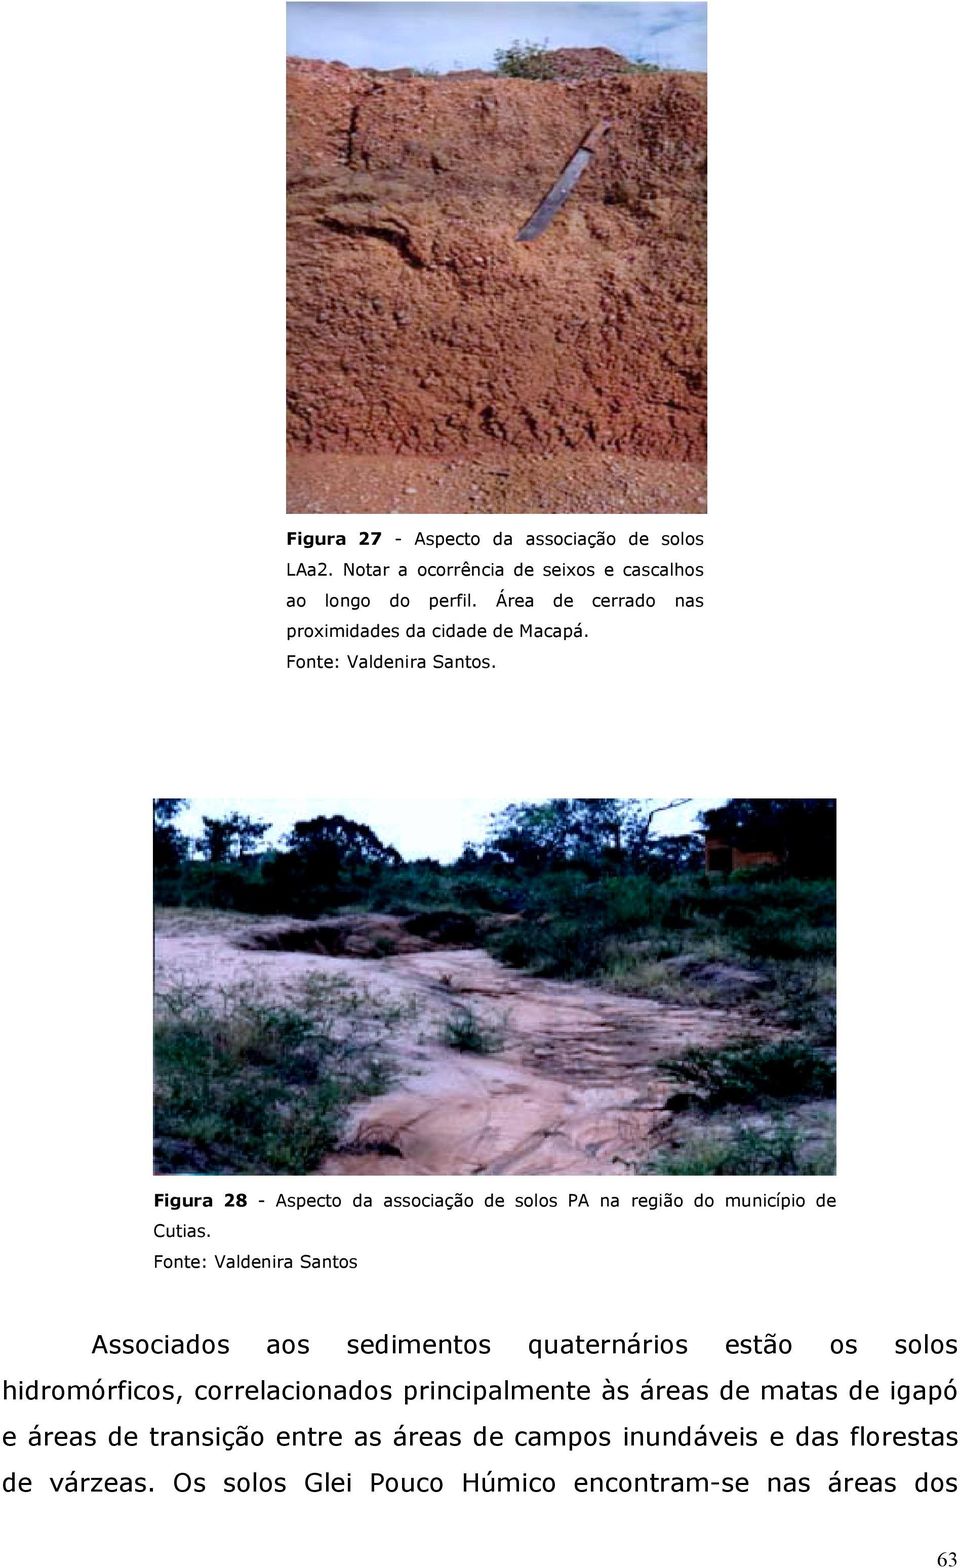 Figura 28 - Aspecto da associação de solos PA na região do município de Cutias.